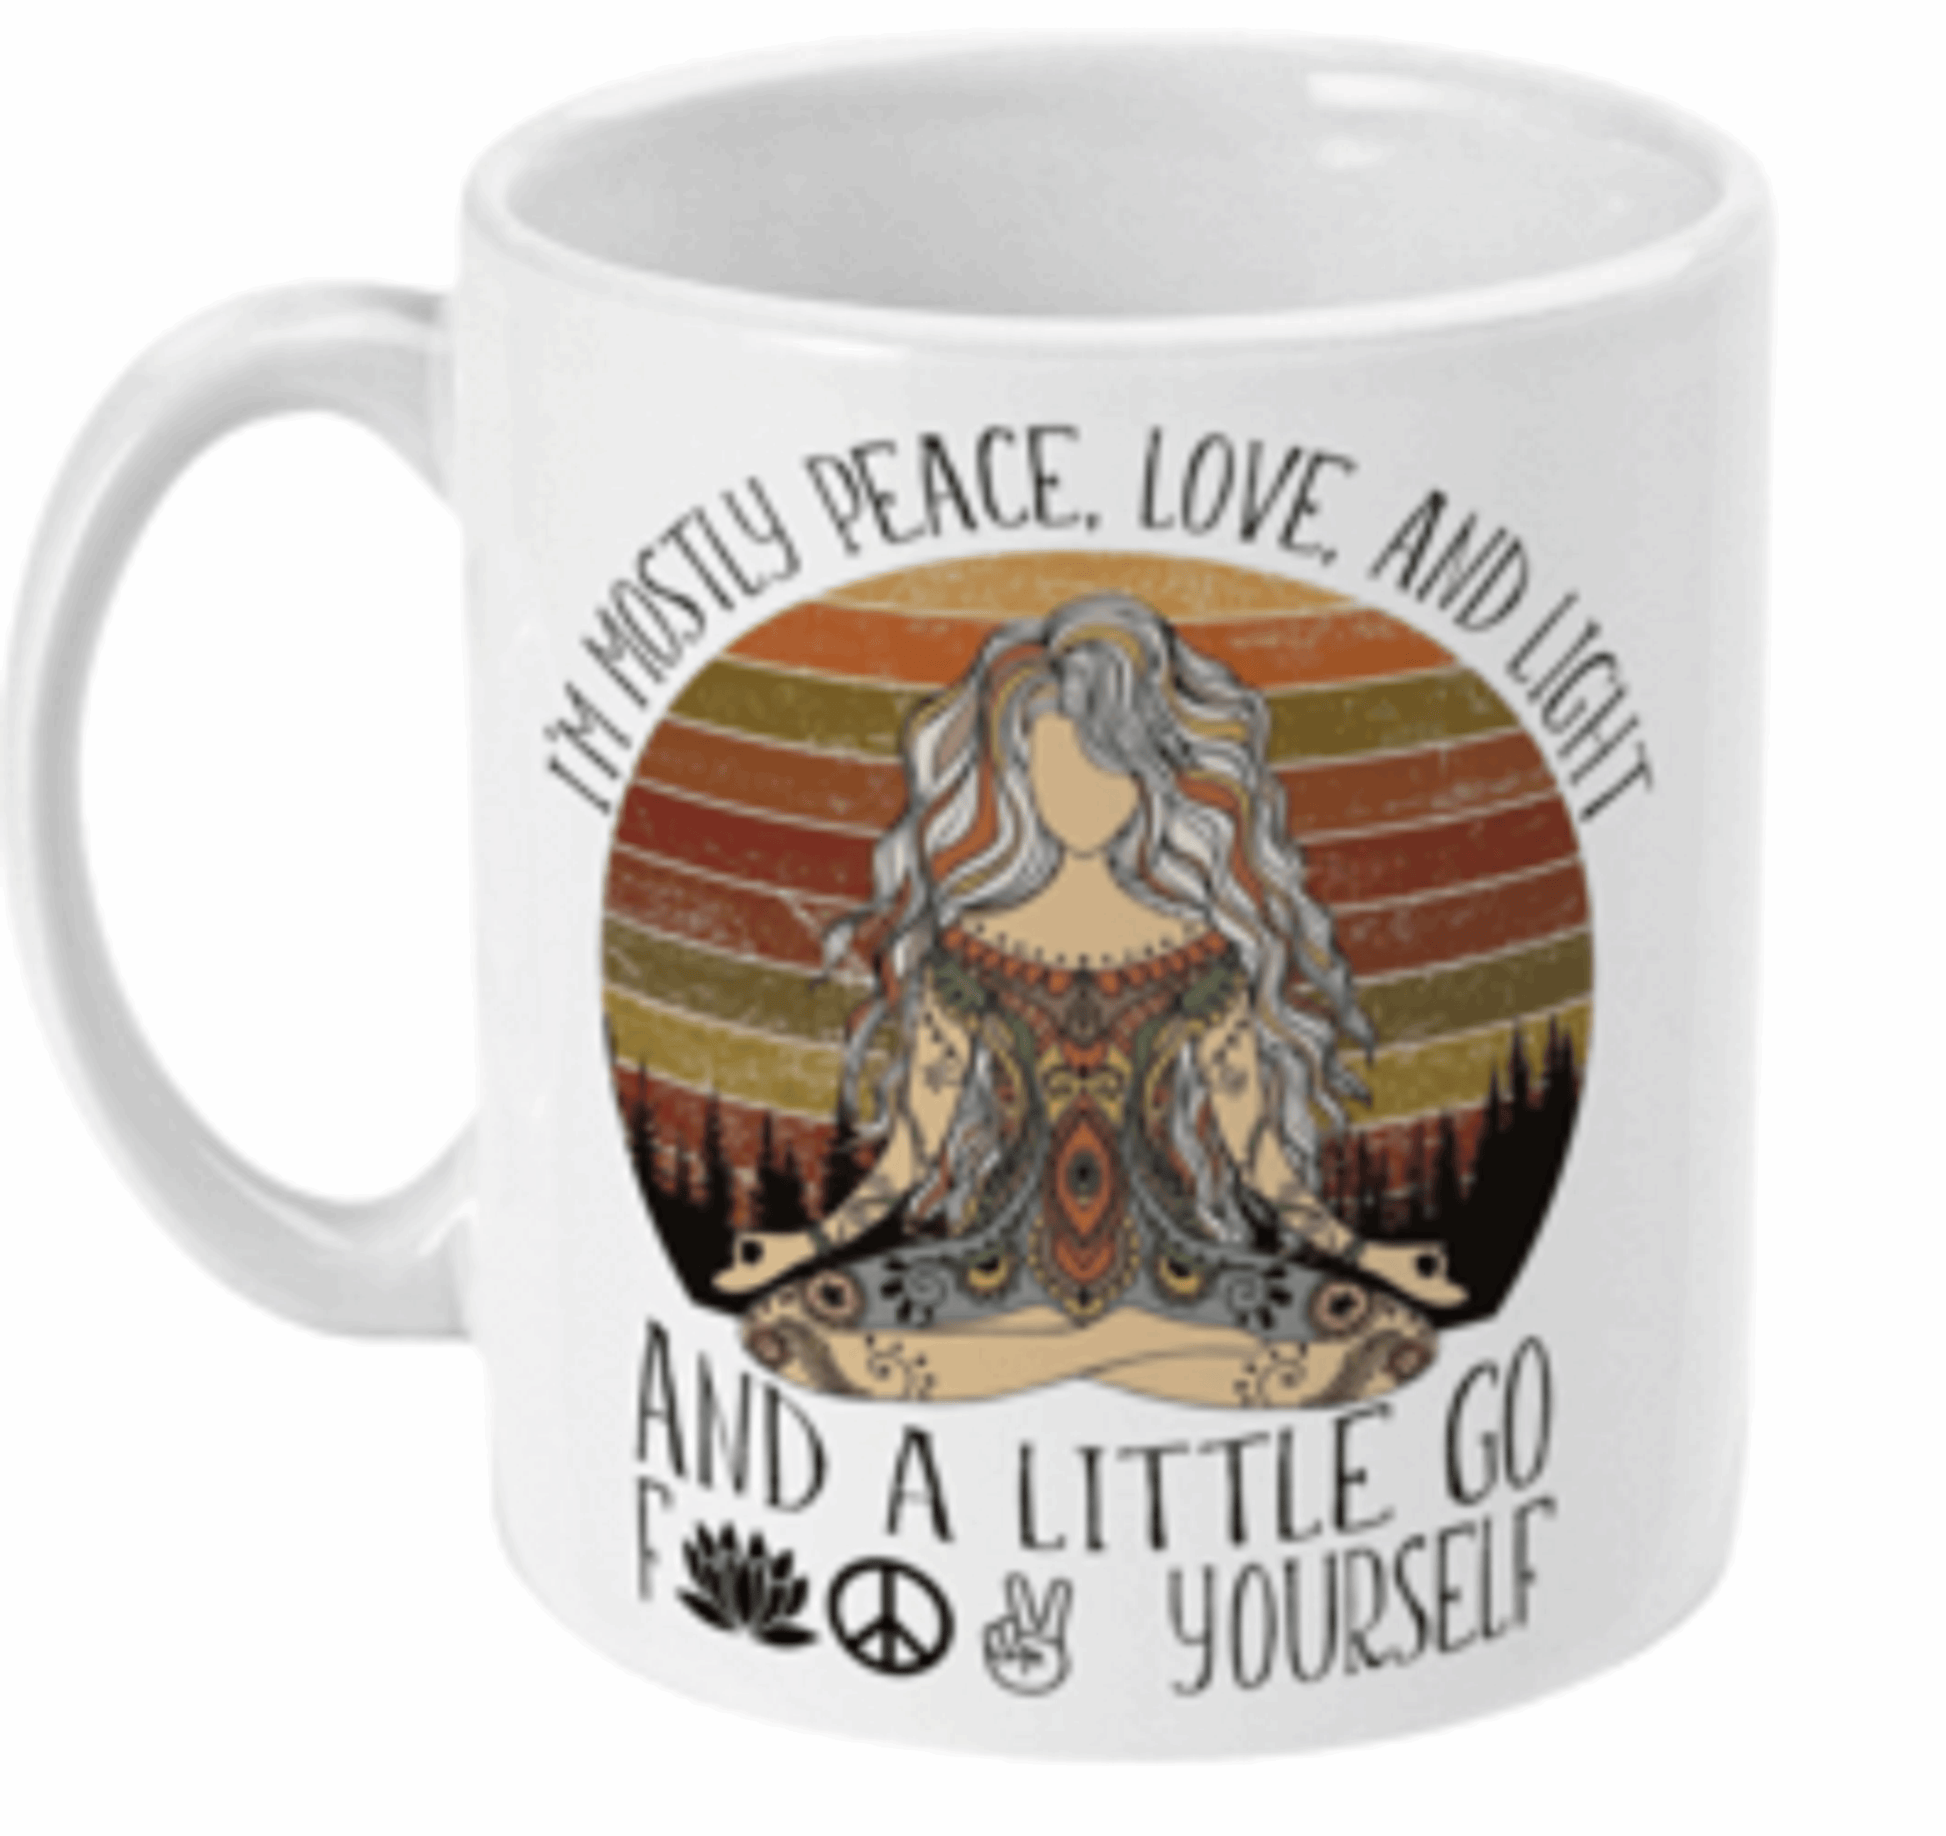  I'm Mostly Peace and Light Coffee Mug by Free Spirit Accessories sold by Free Spirit Accessories